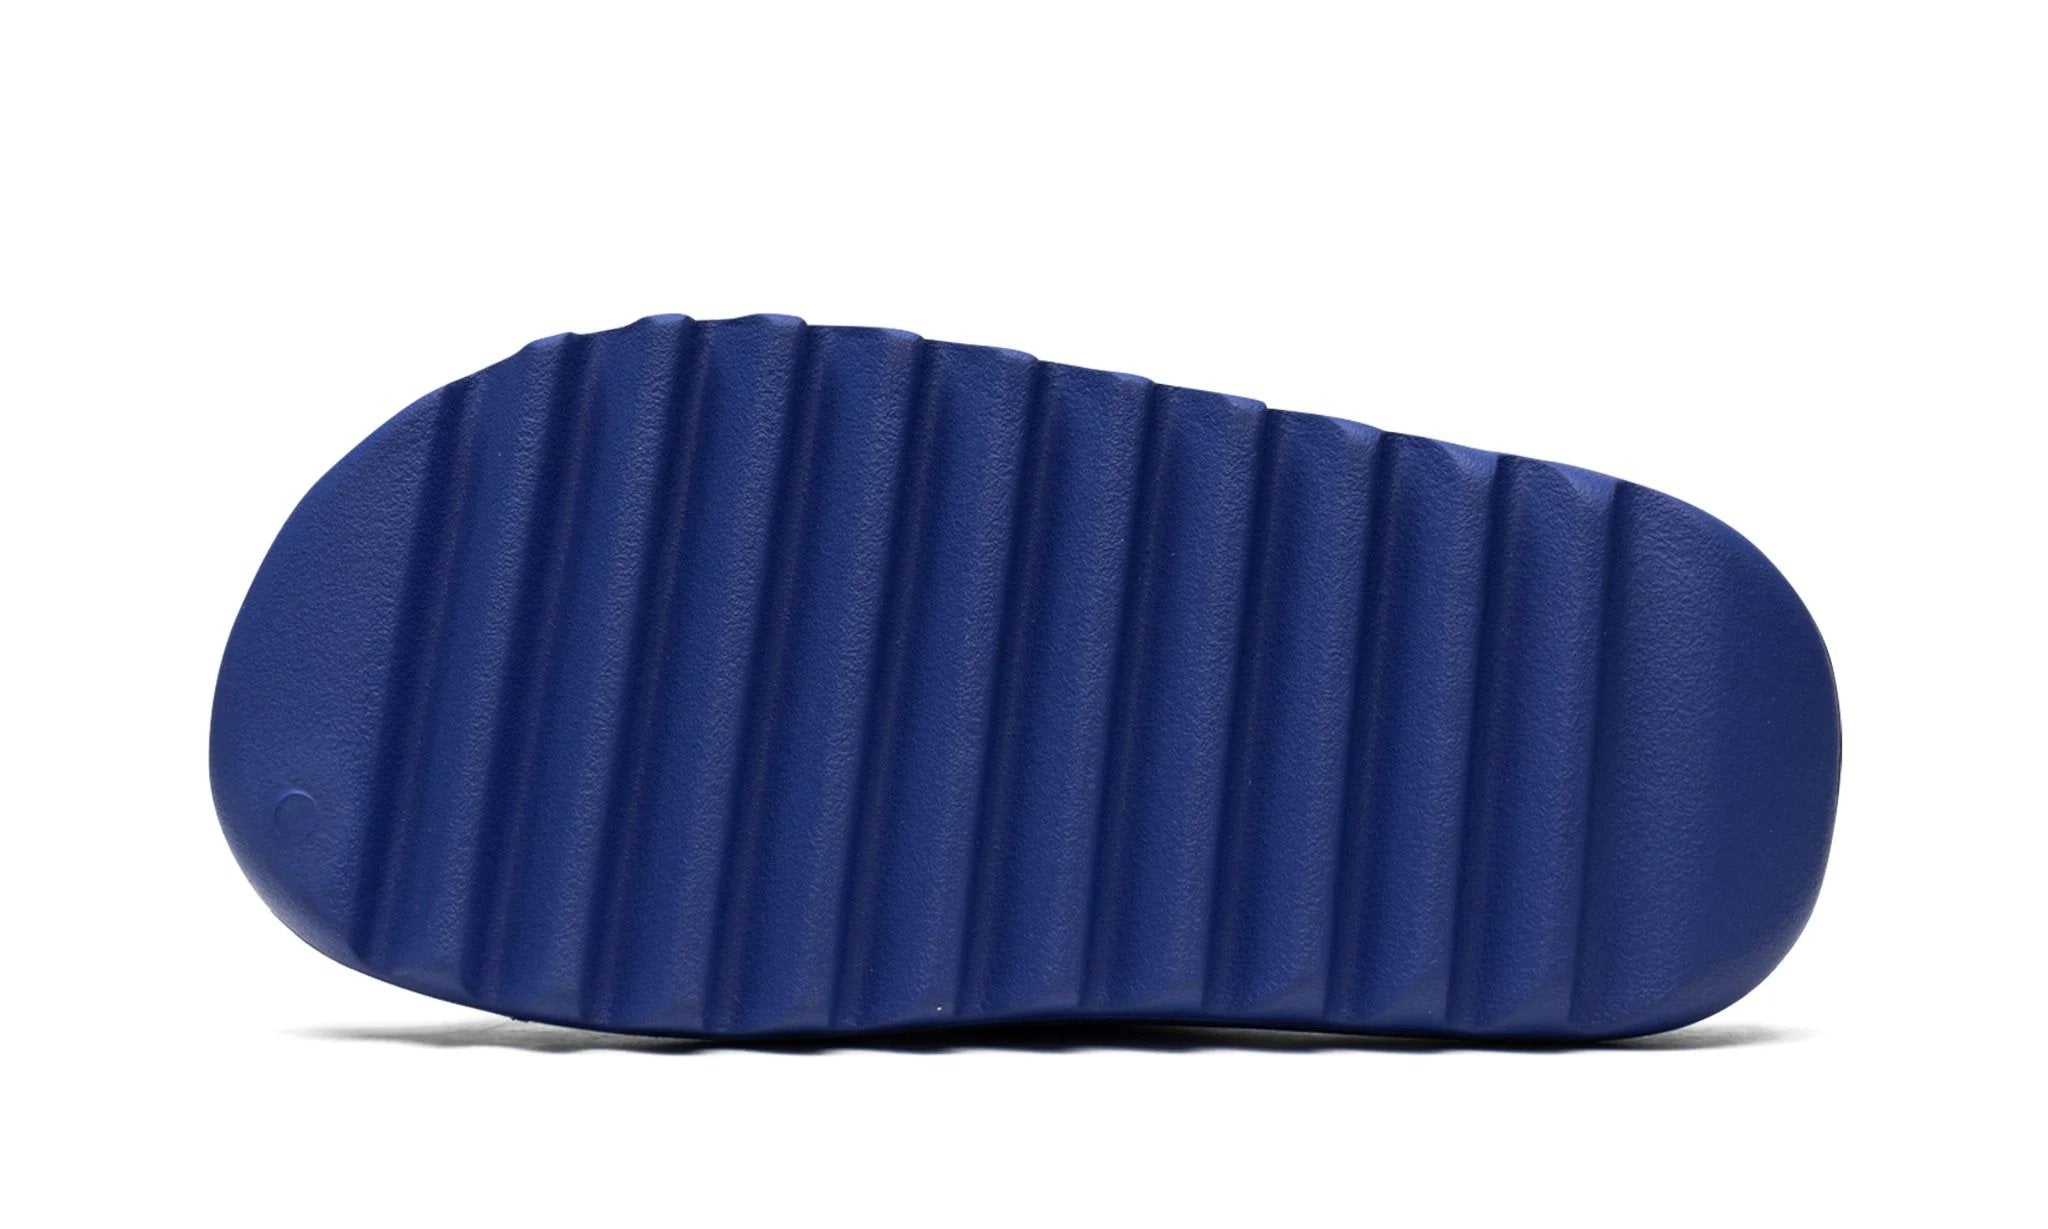 Adidas Yeezy Slide Azure - ID4133 - Sneakers